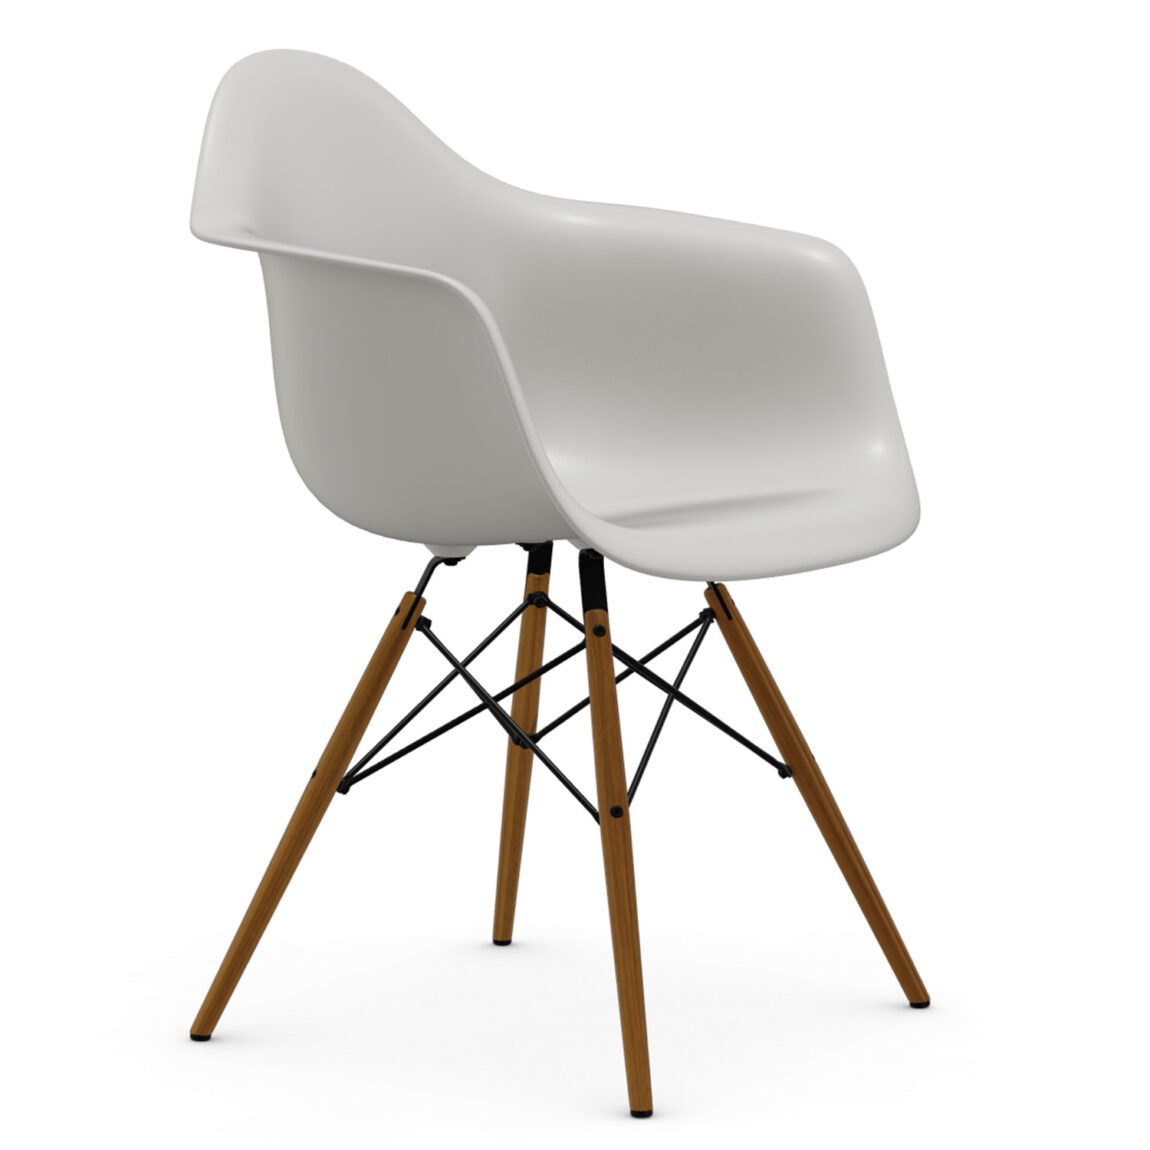 Výprodej Vitra designové židle DAW-skořepina bílá